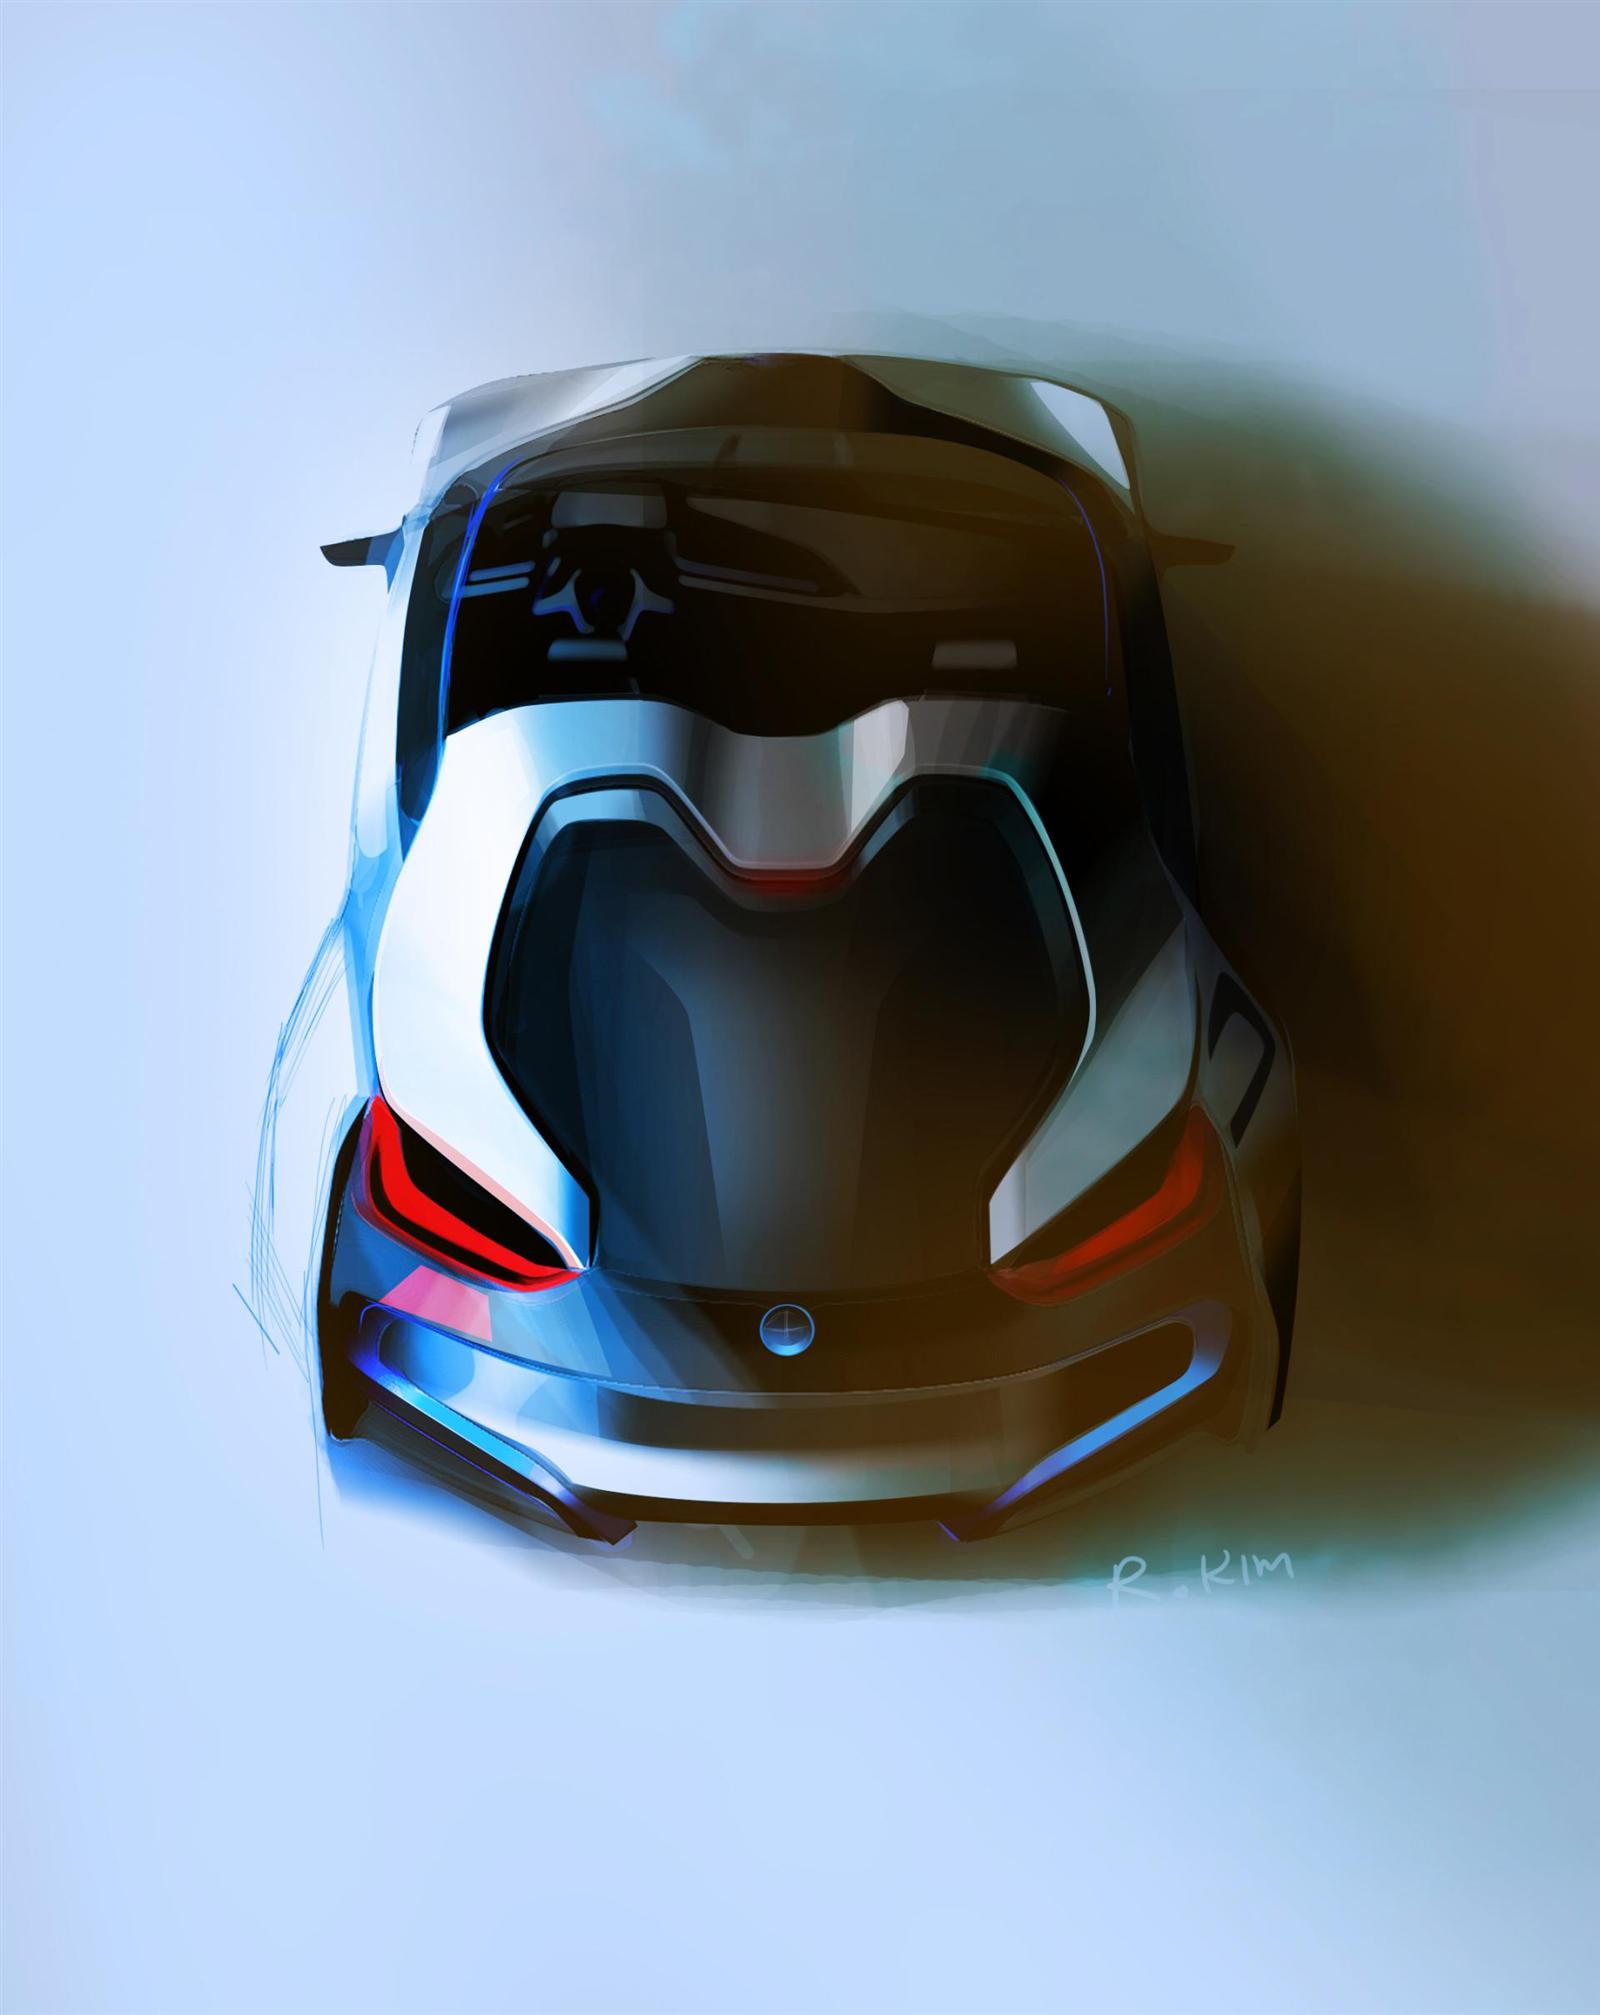 2012 BMW i8 Concept Spyder